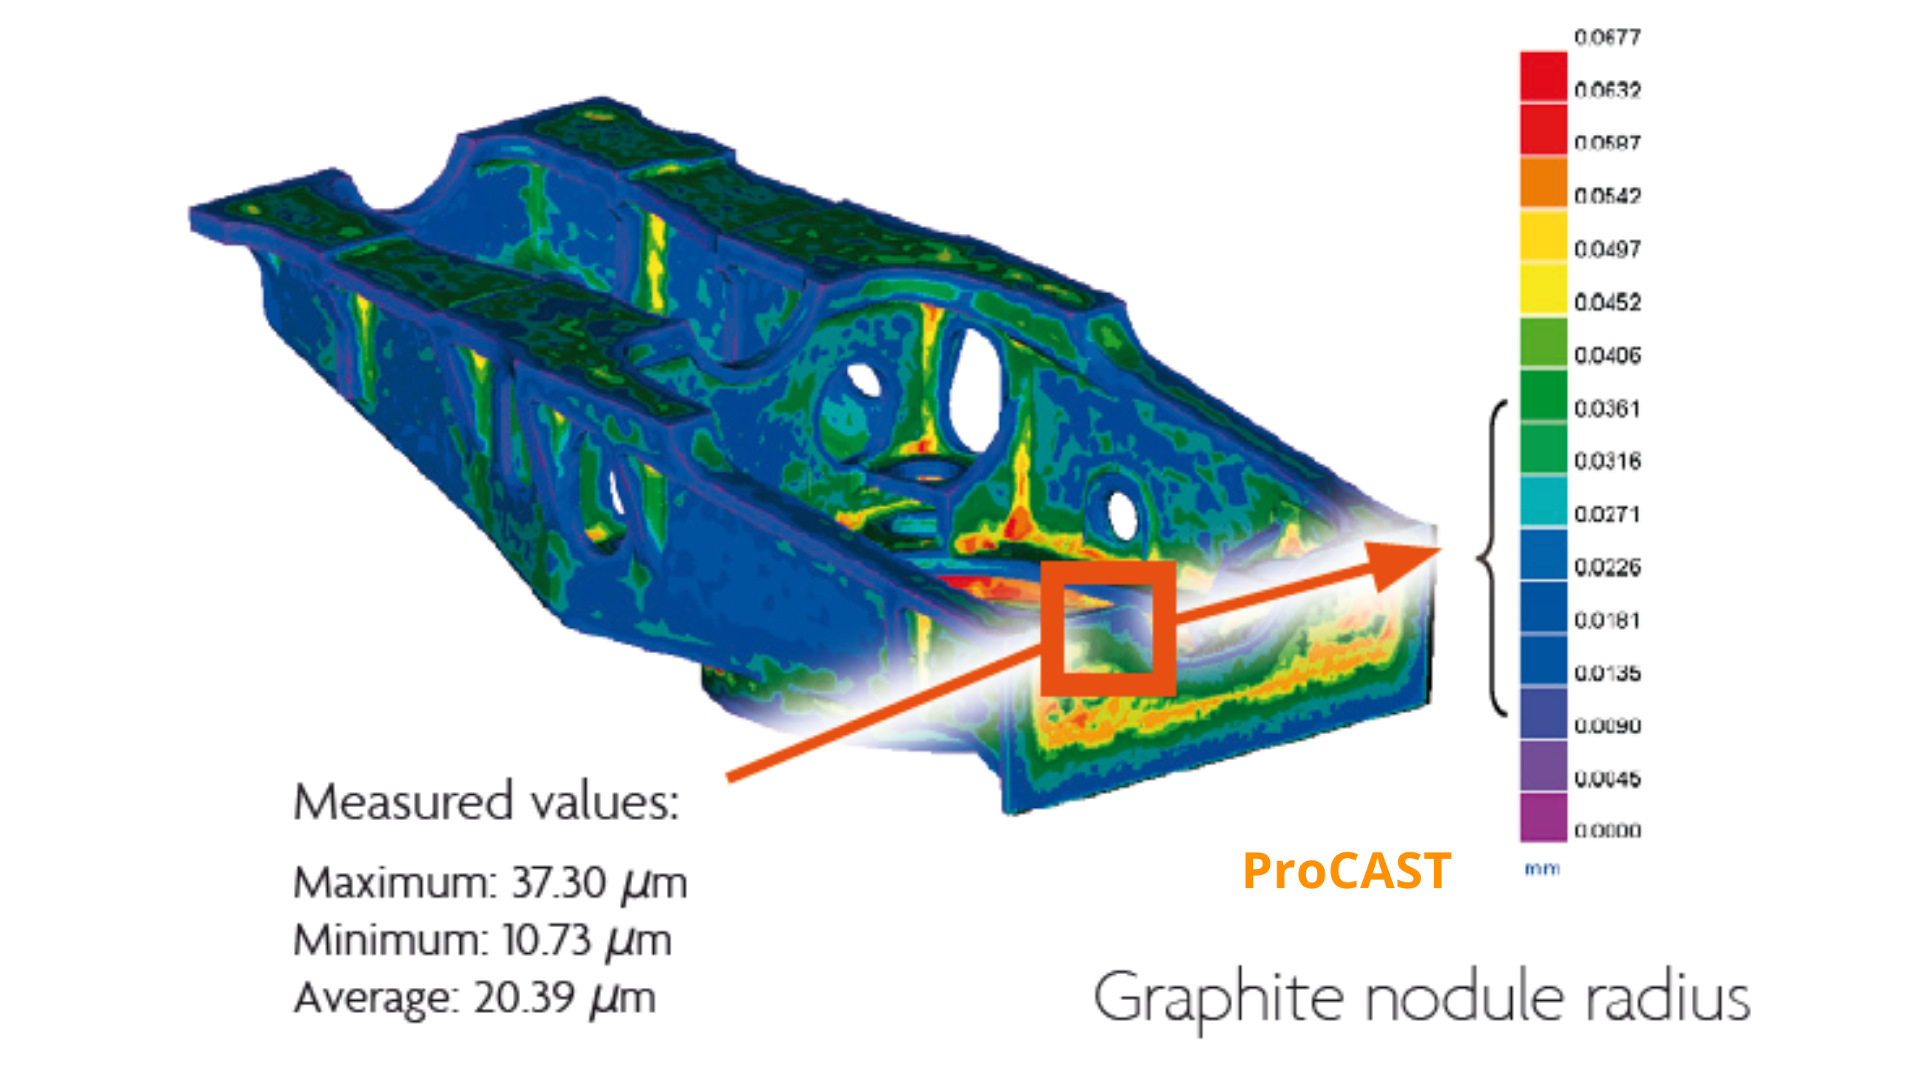 simulazione gravità sabbia con software ProCAST